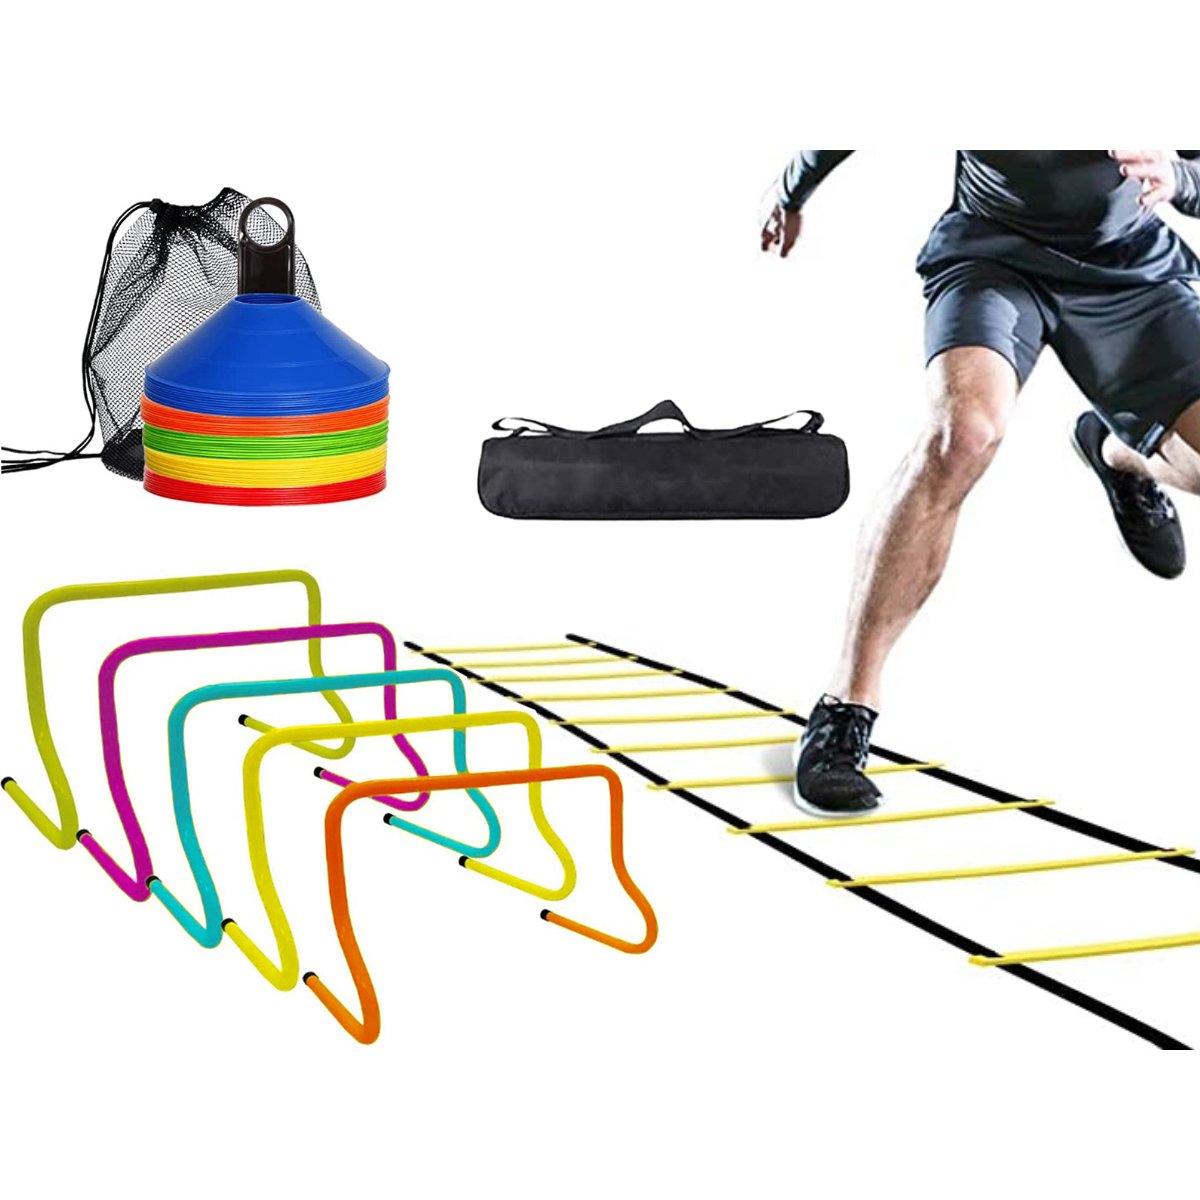 Kit Multifuncional Cone de Treinamento, Escada de agilidade e Barreiras de obstaculo.